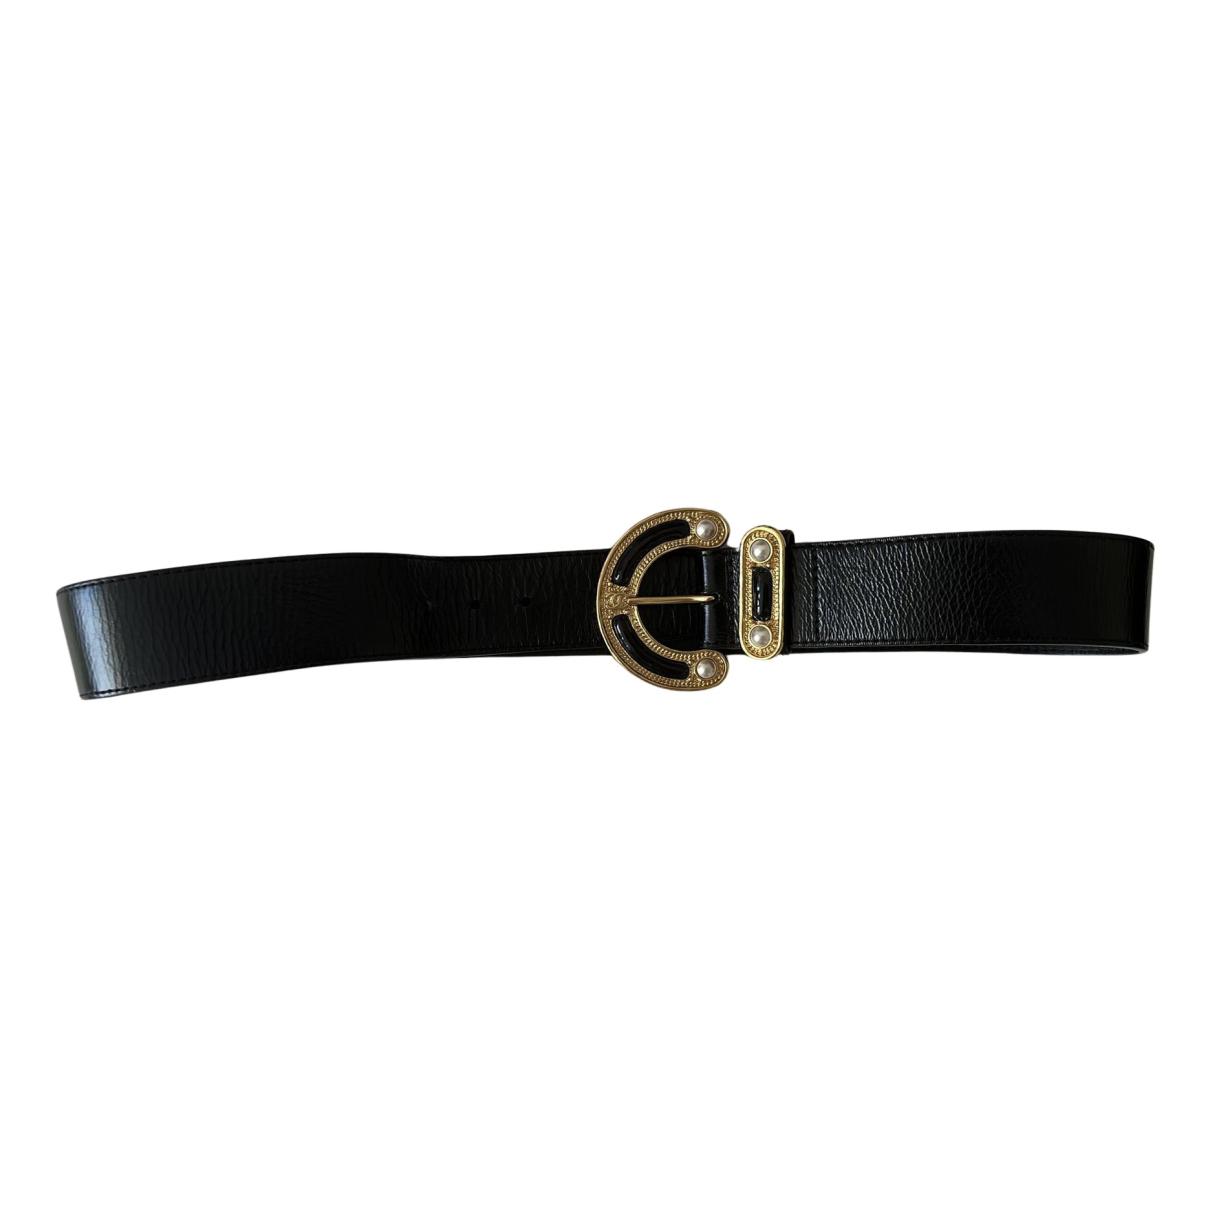 Cinturones Louis vuitton Metalizado talla 100 cm de en Charol - 21715530